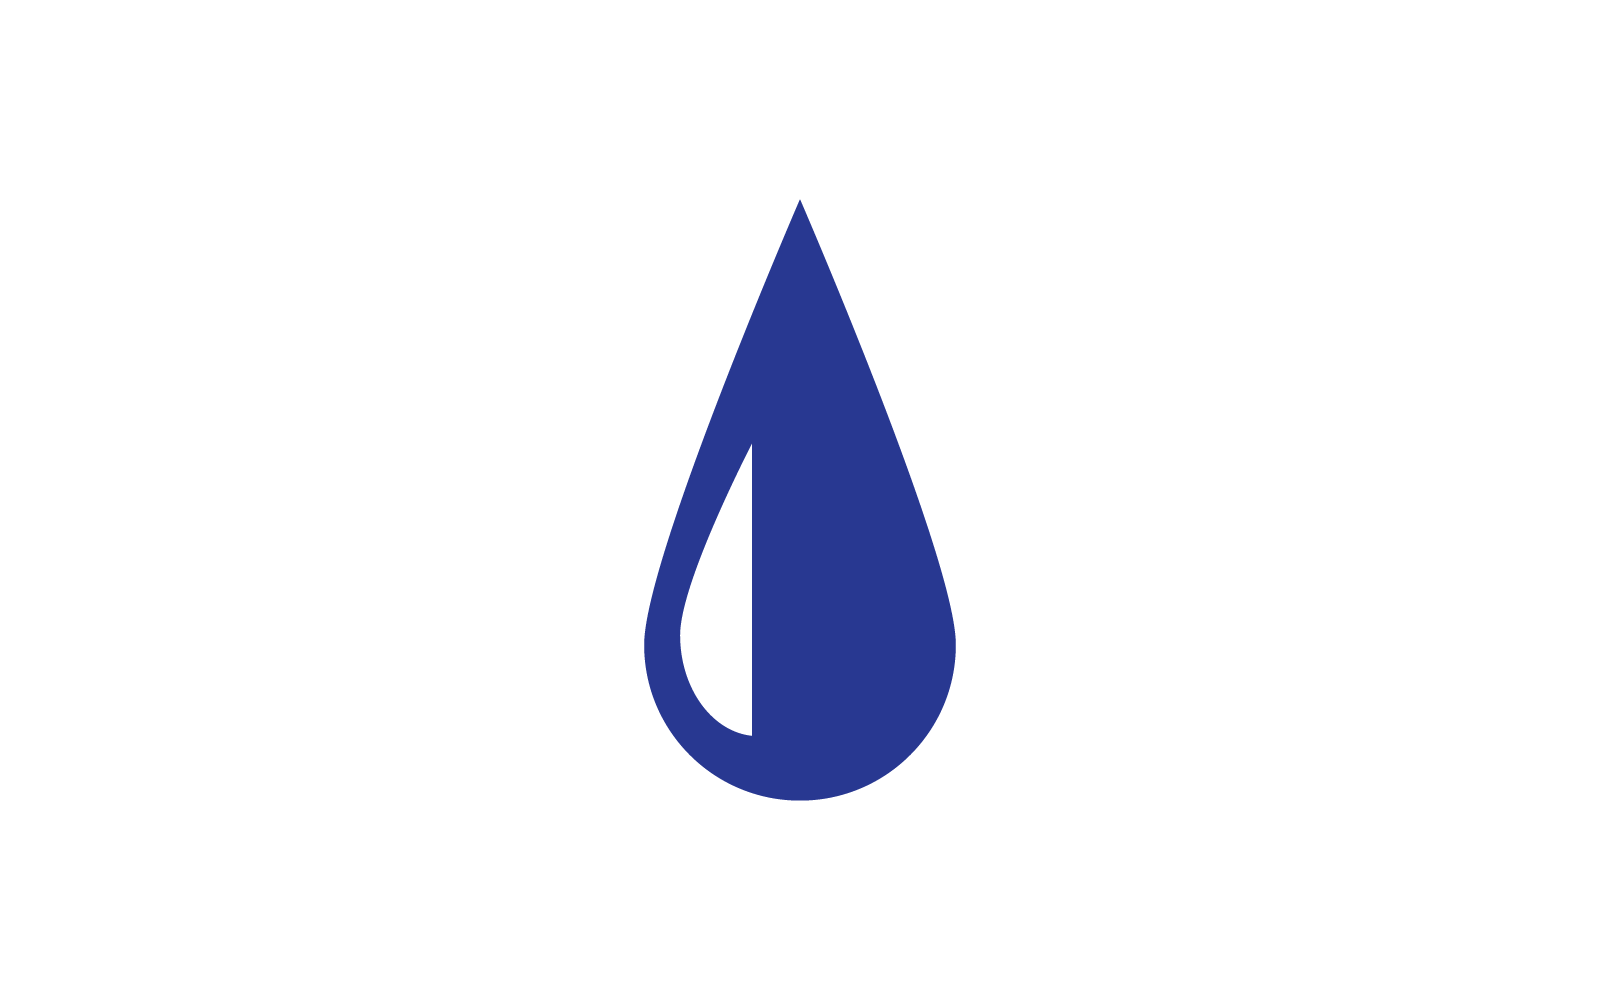 Water drop design vector template